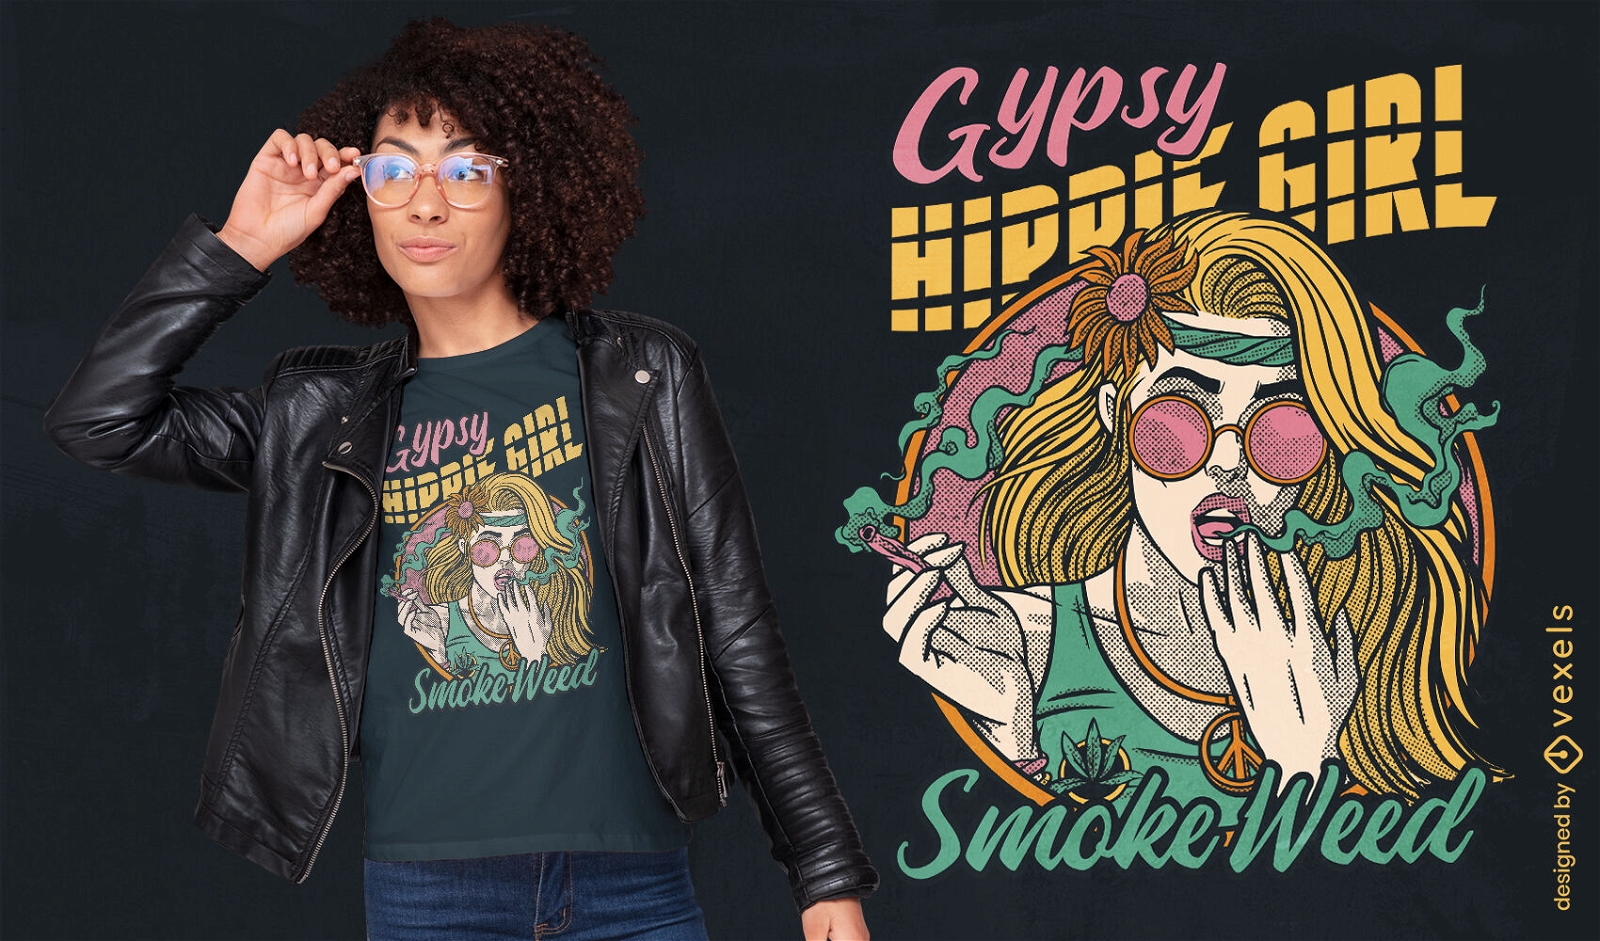 Hippie girl smoking weed t-shirt design